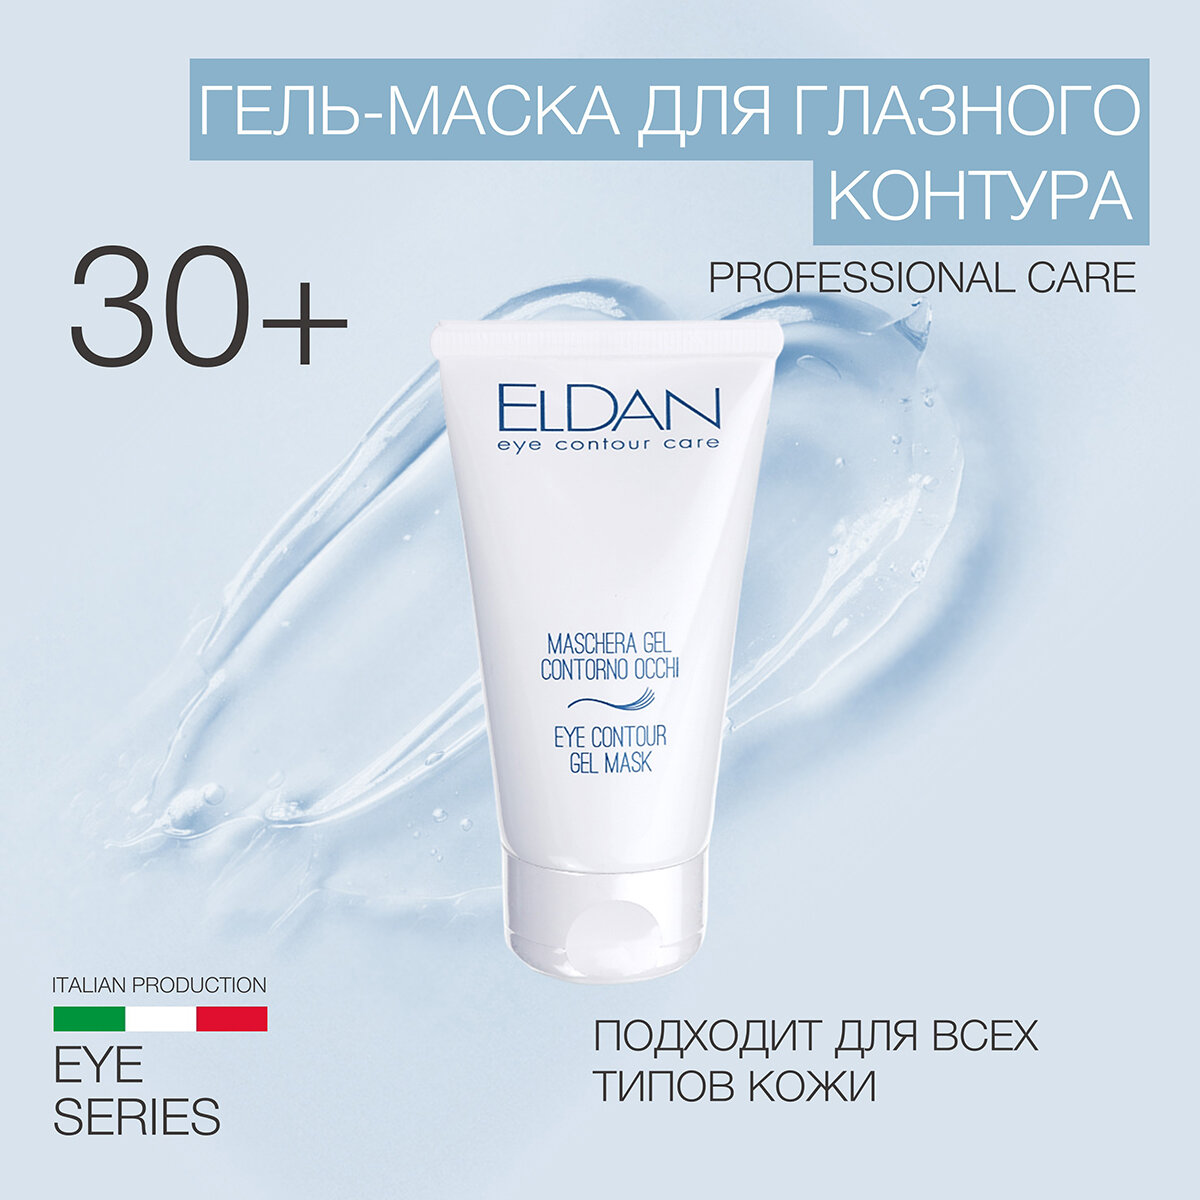 Гель-маска для глазного контура ELDAN cosmetics для любого типа кожи, 50 мл